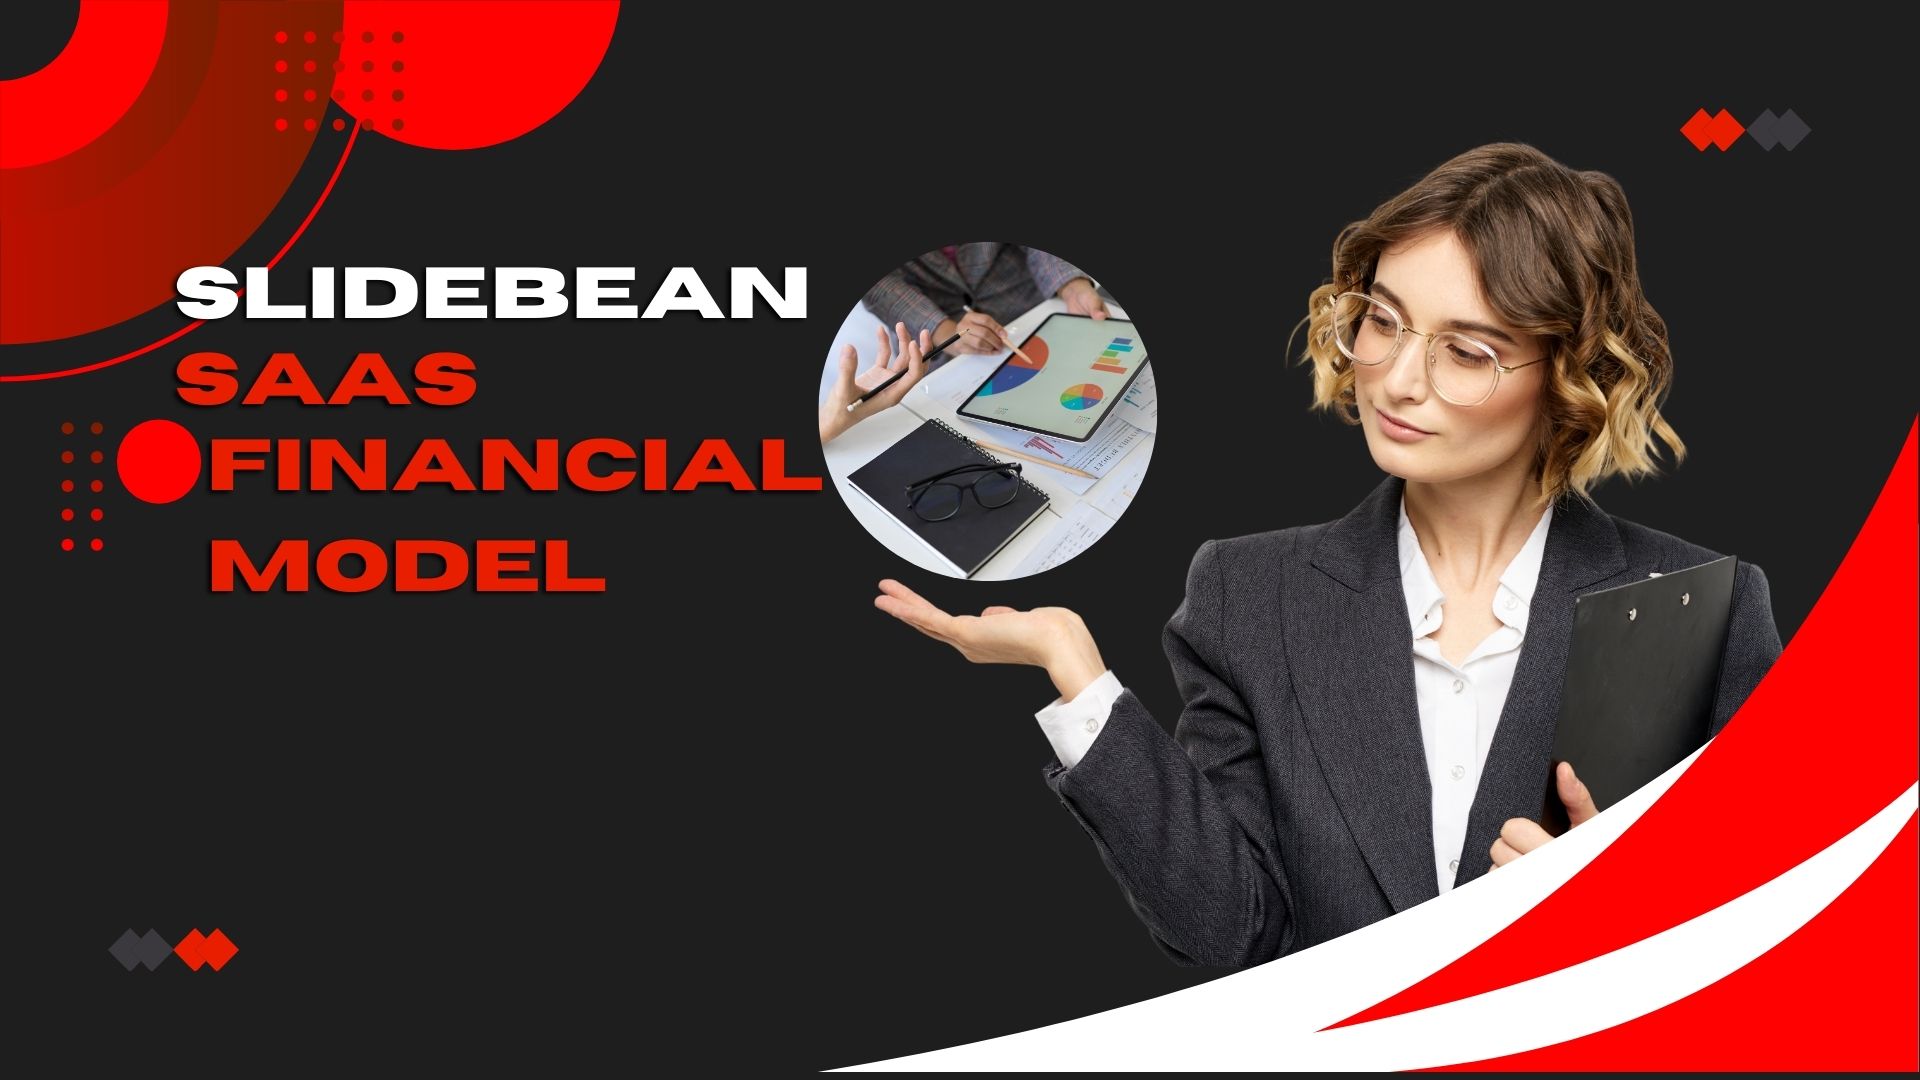 Slidebean Saas Financial Model